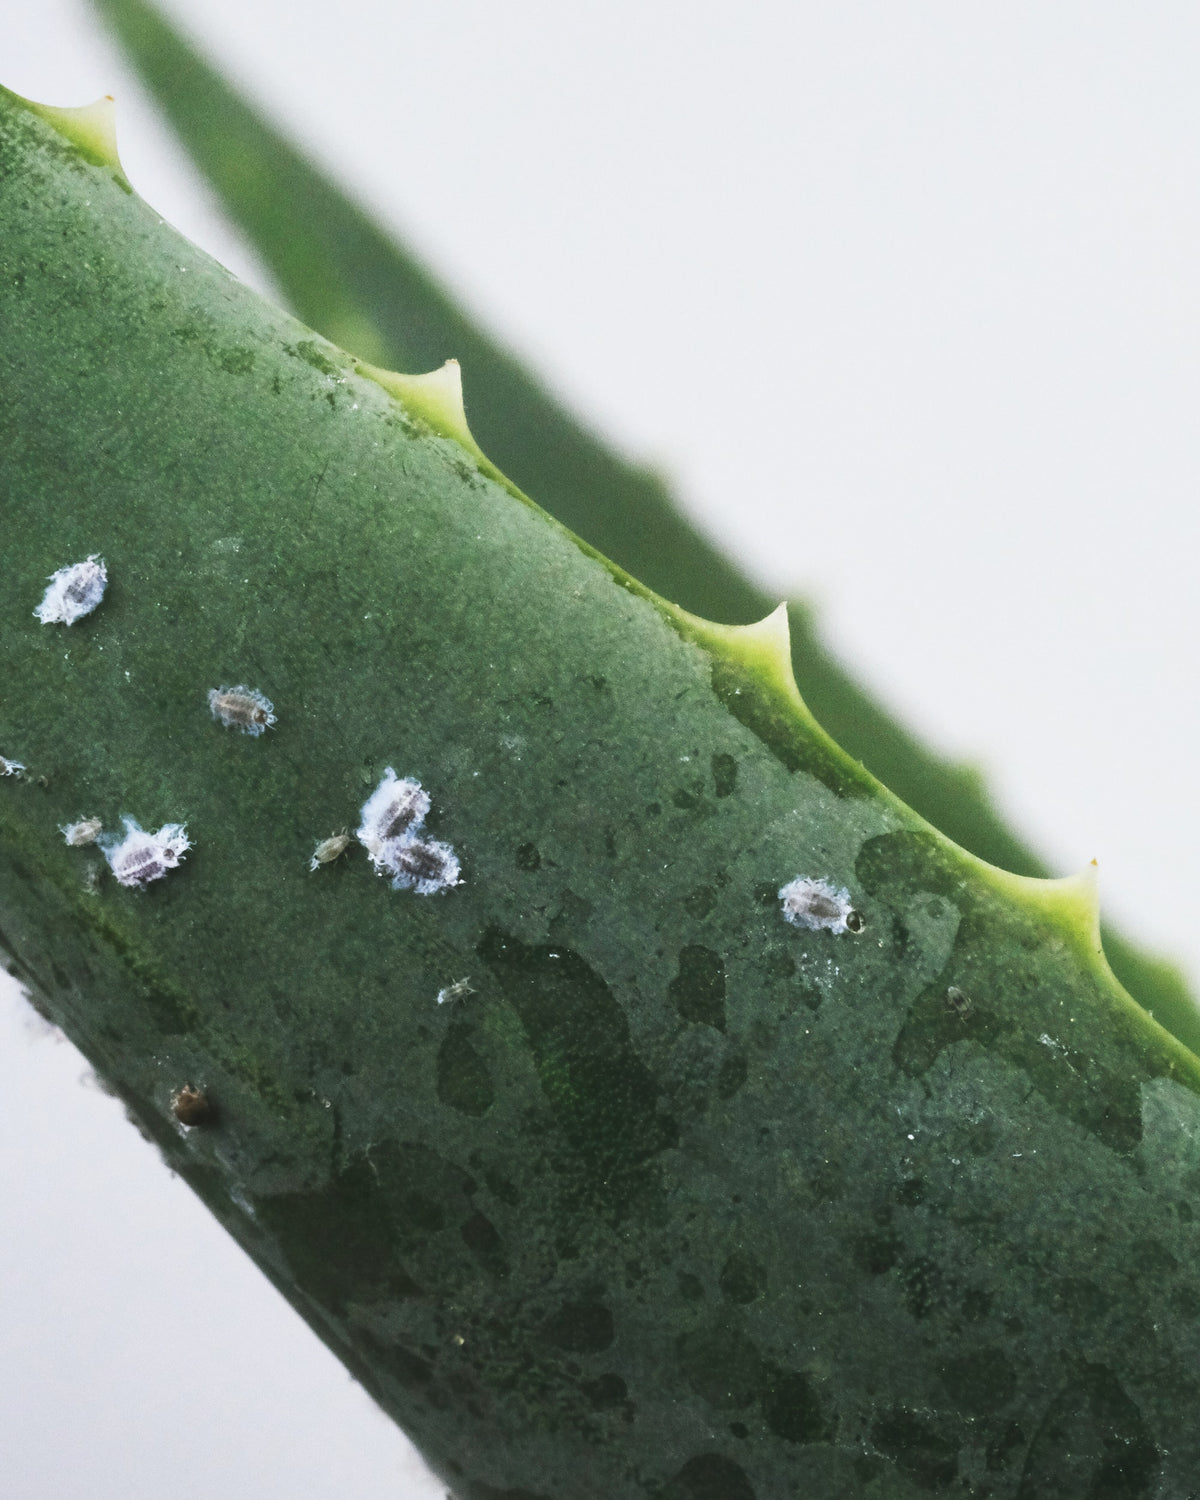 Wollläuse: kleine, weisse, flauschige Bällchen auf dem Blatt einer Aloe vera